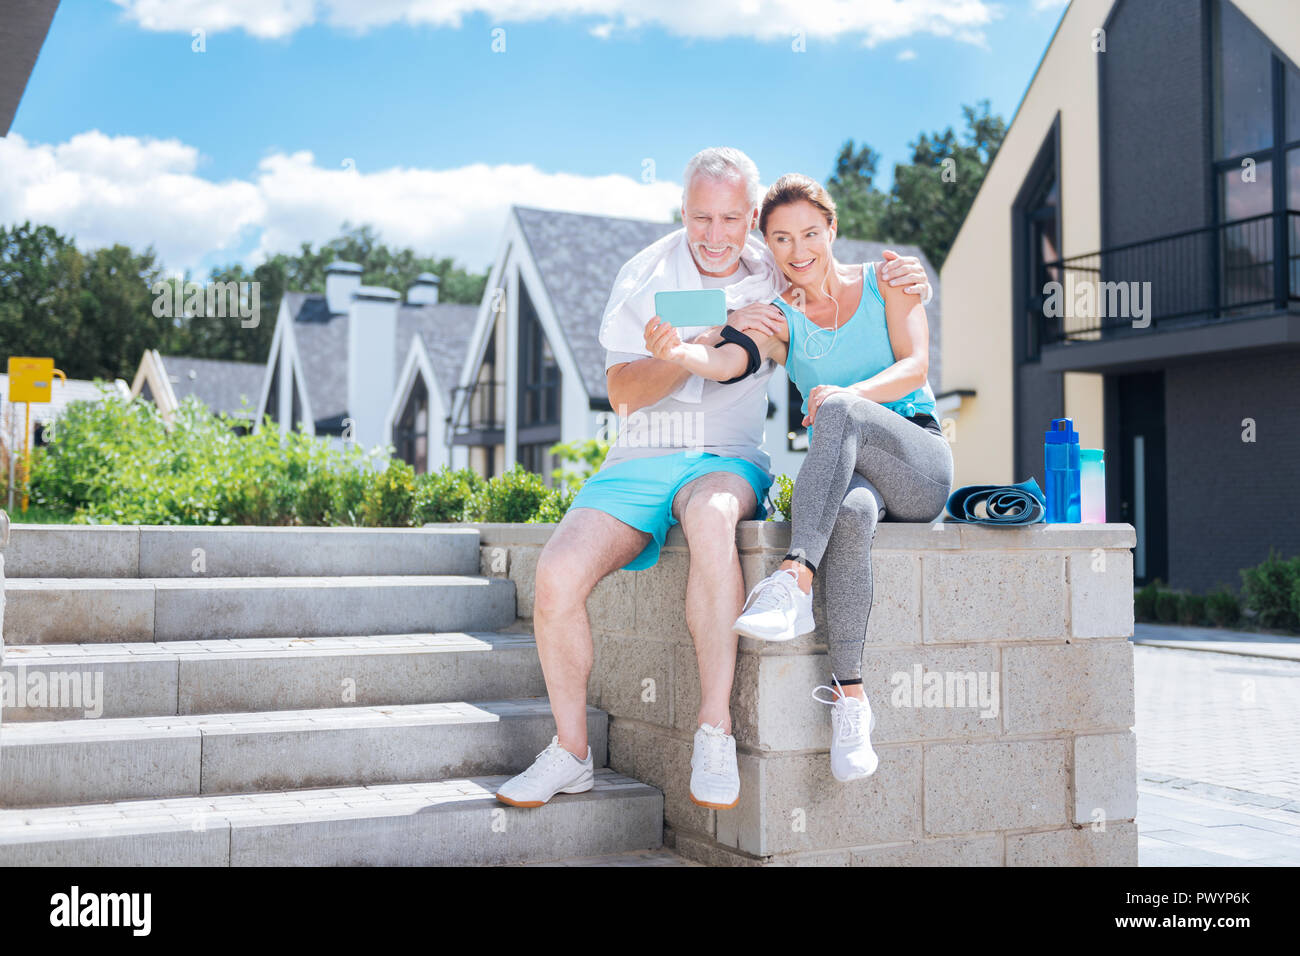 Gesund athletische Paar tragen weiße bequeme Turnschuhe, selfie Stockfoto